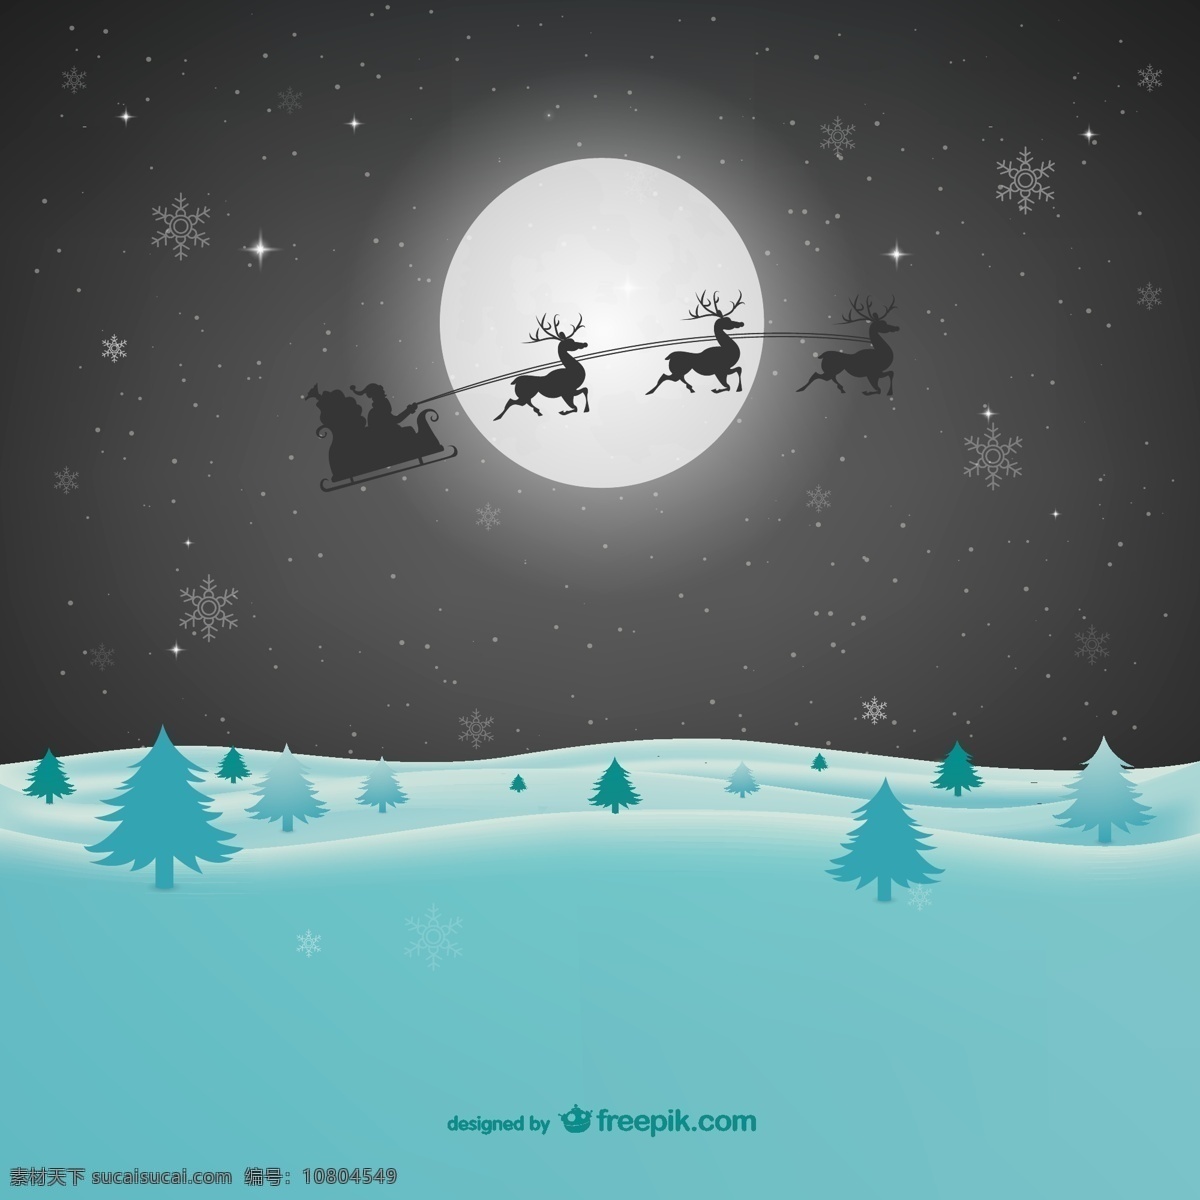 雪原 圣诞 夜 雪橇 圣诞节 圣诞老人 圣诞夜 松树 雪地 月亮 月夜 卡通 矢量 雪花 格式 节日素材 其他节日